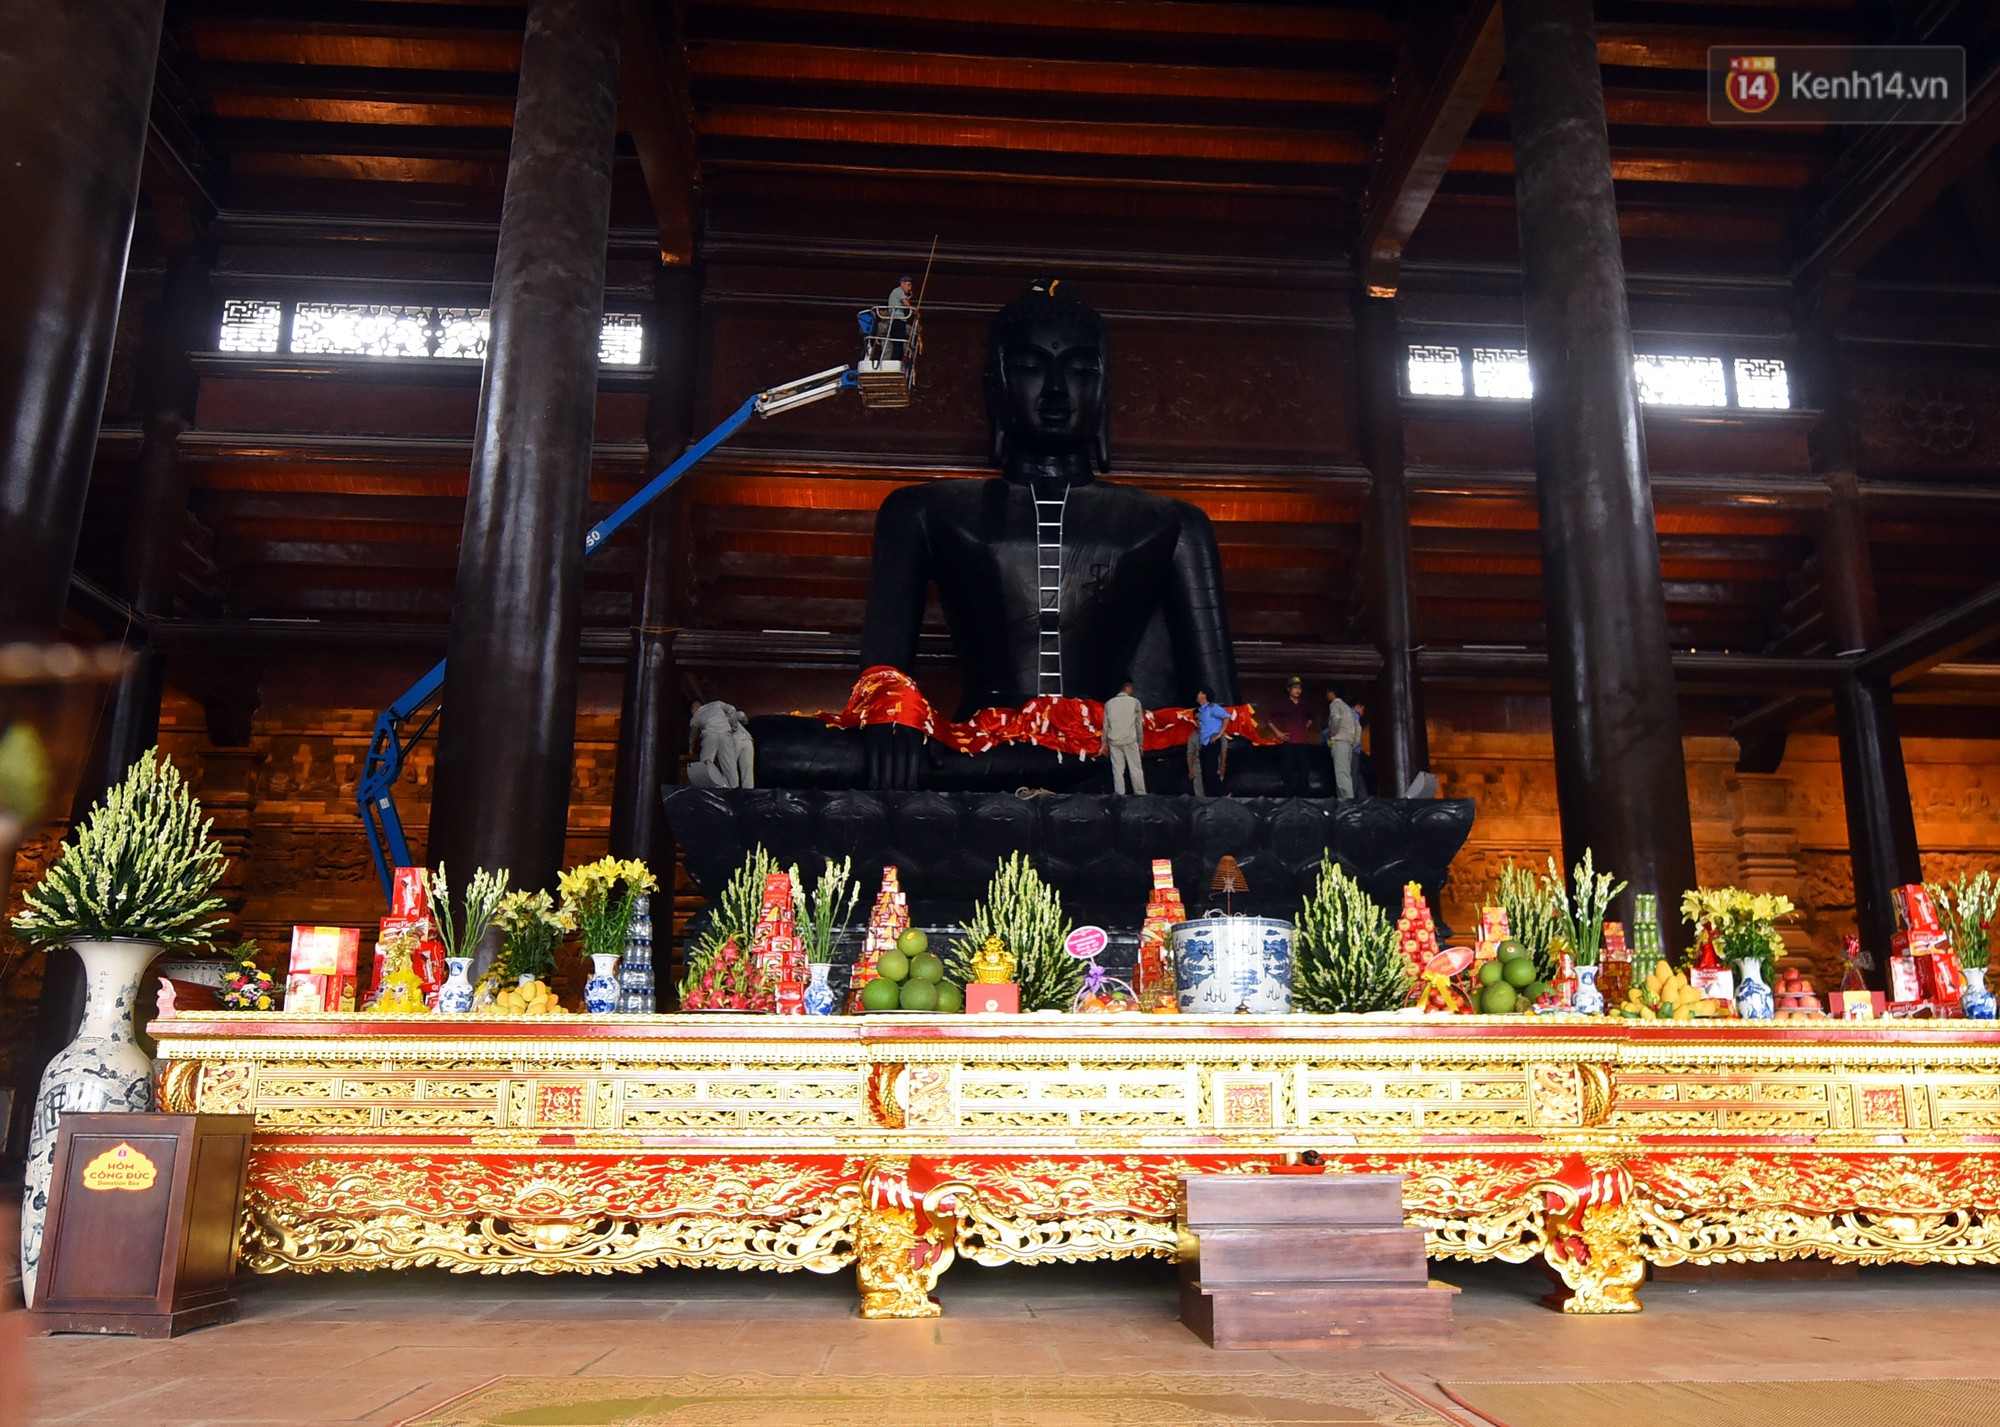 Quang cảnh bên trong điện Tam Bảo, Tam Thế, Quan Âm và chùa Ngọc.

